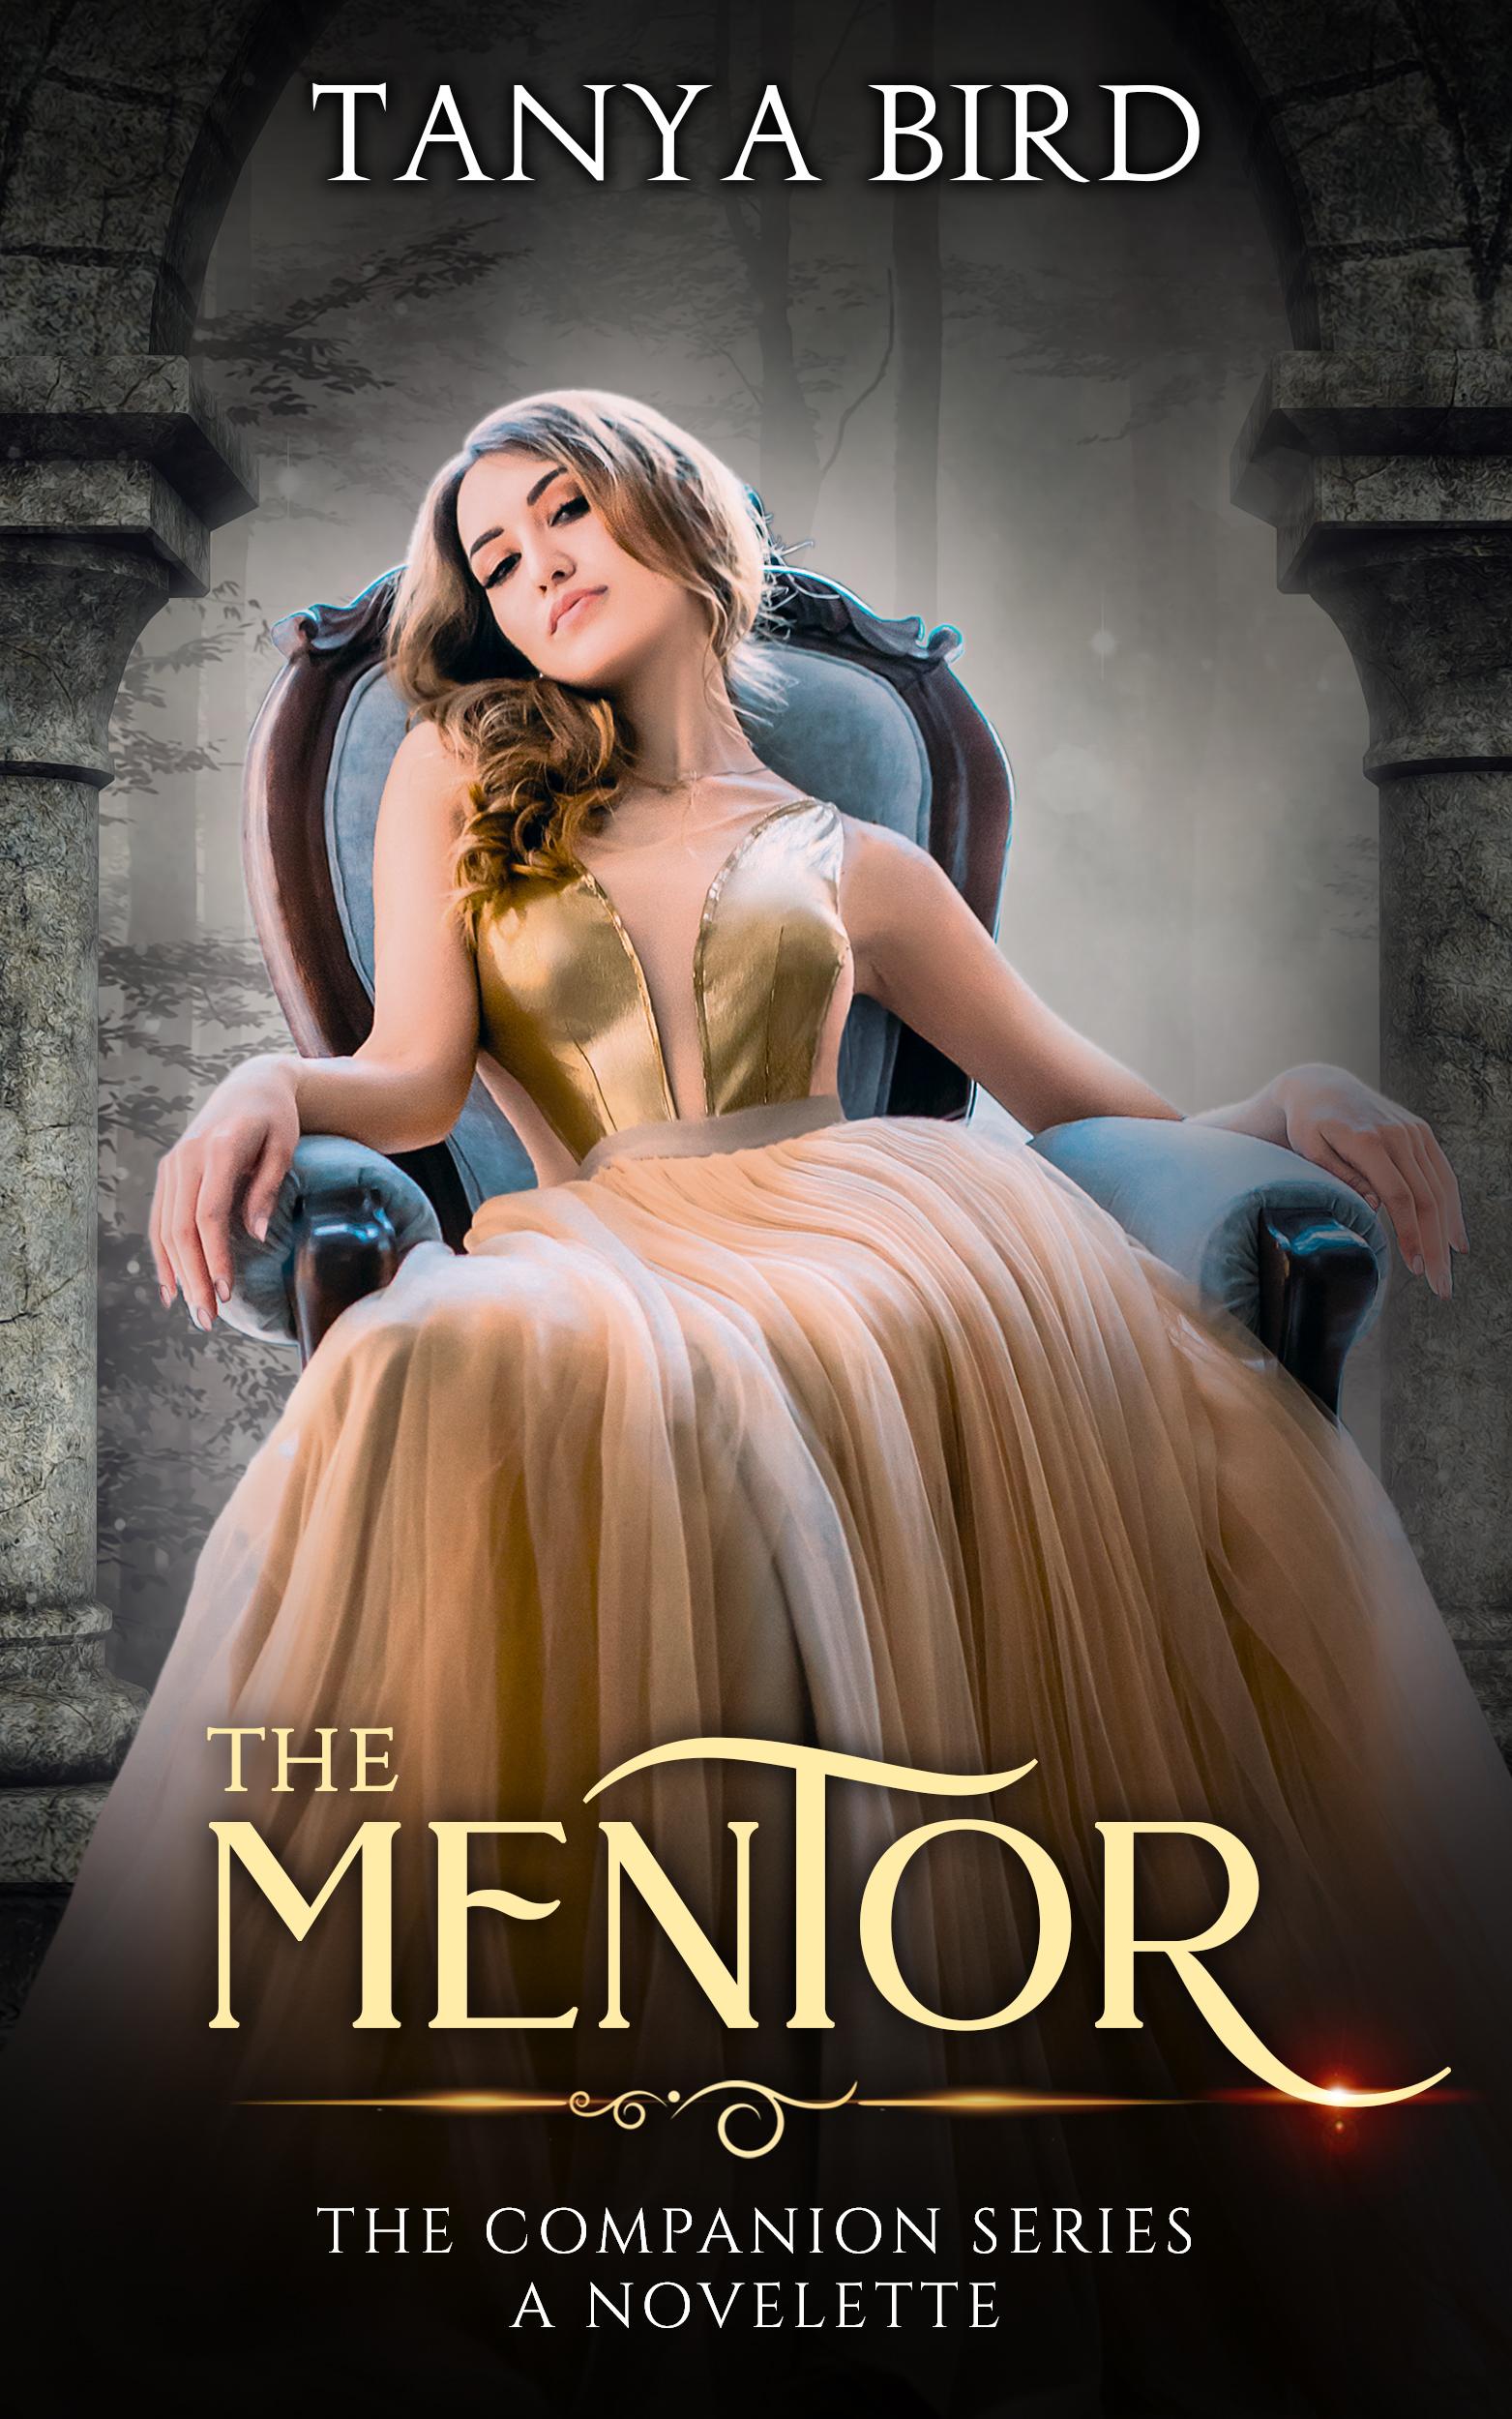 The Mentor - A Novelette